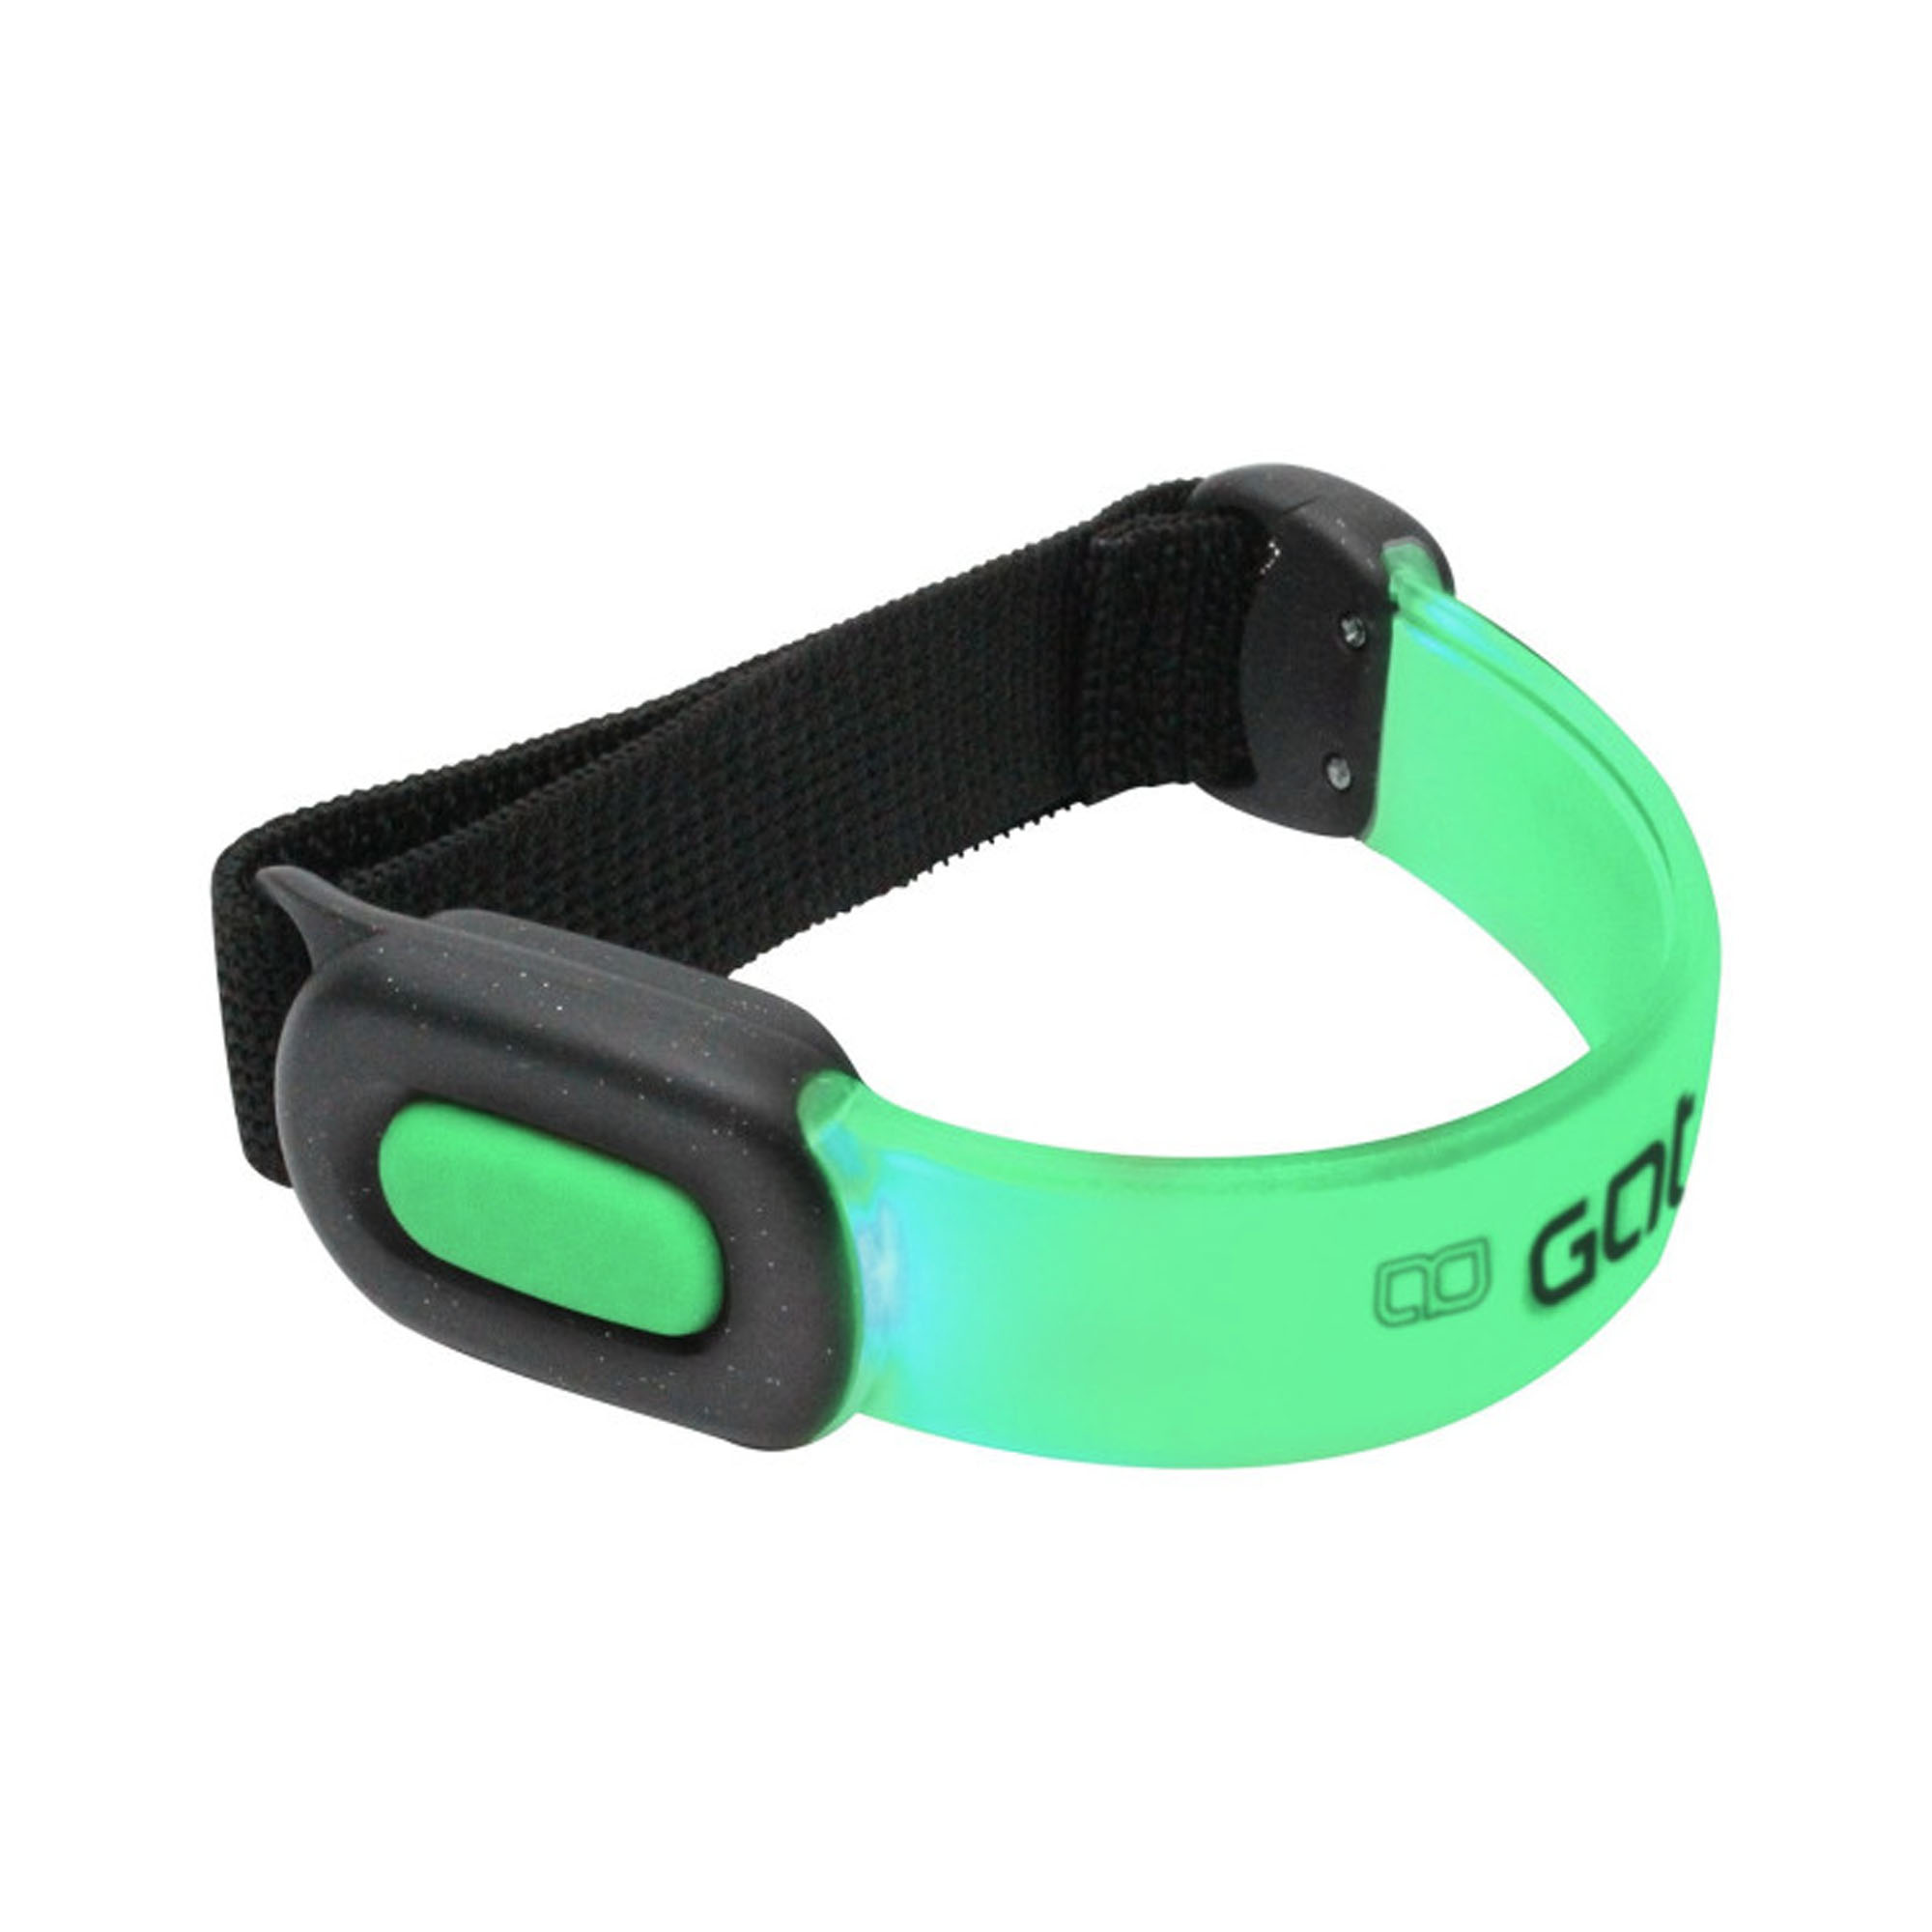 GATO Neon Led Armband Light USB